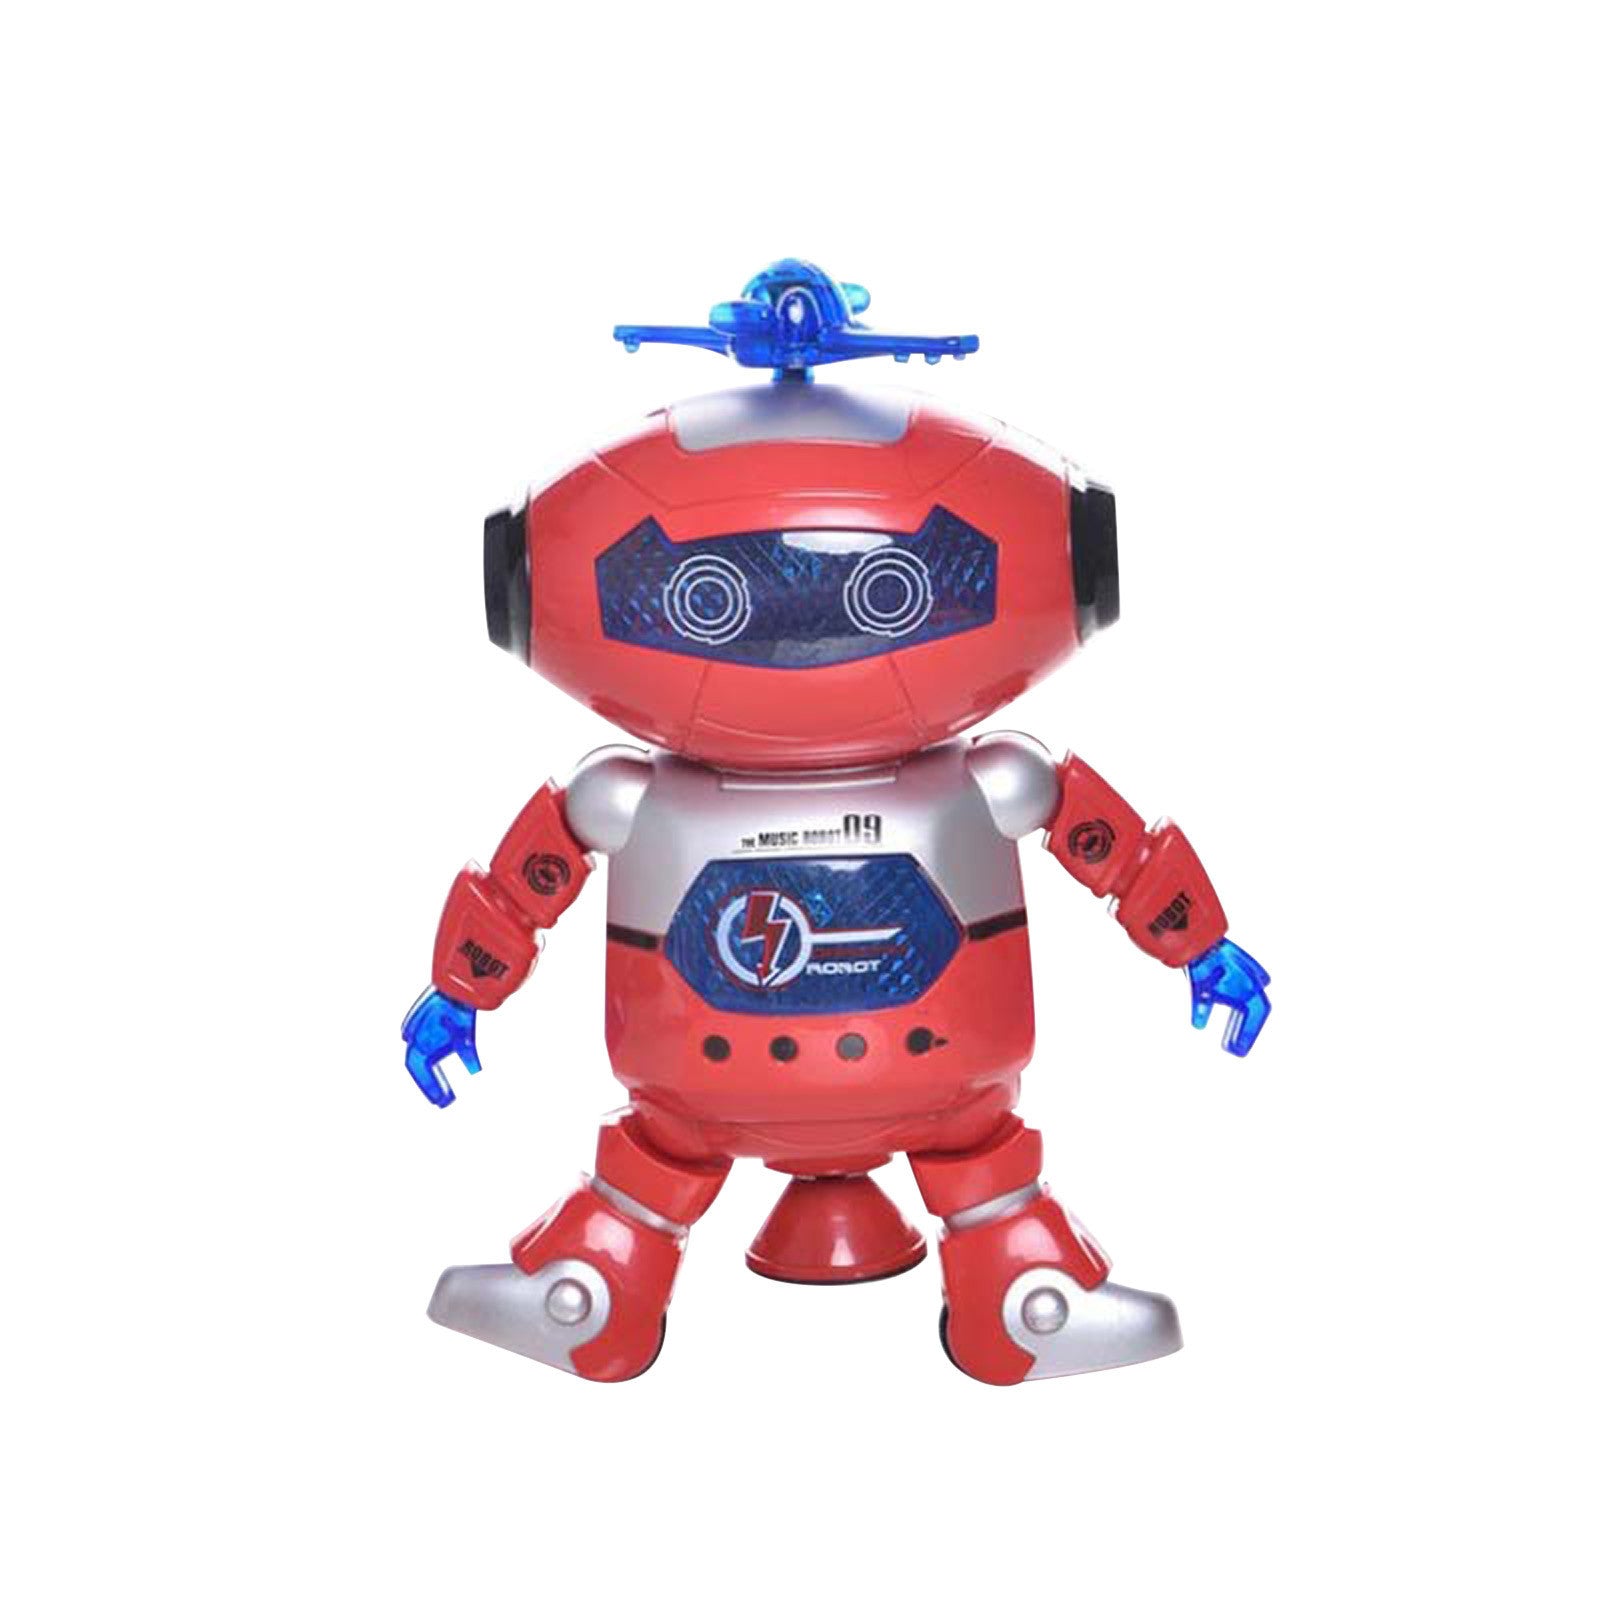 Colorful, luminous, revolving, dancing robot